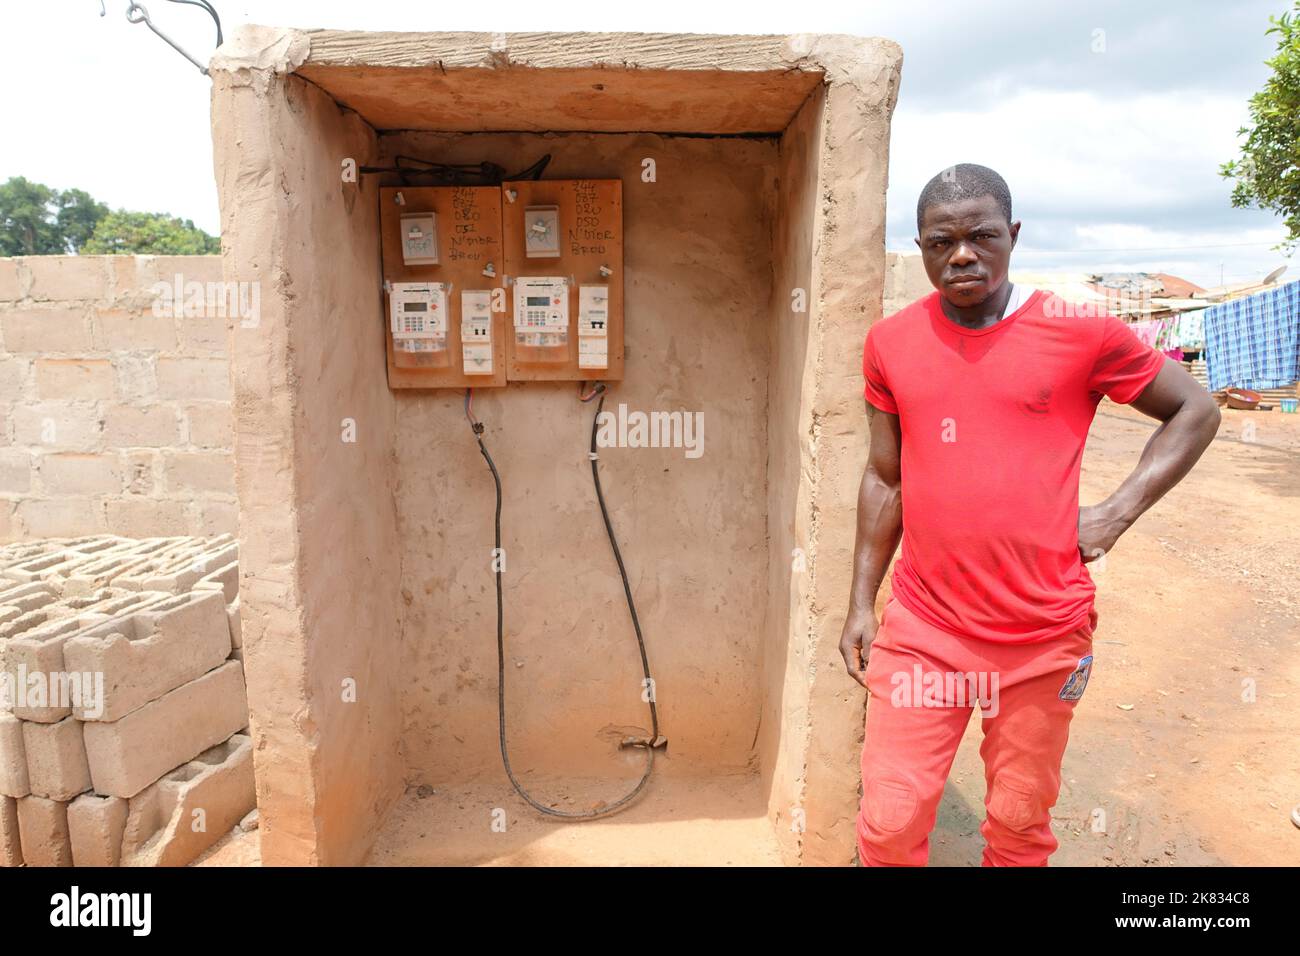 Ein Bewohner posiert neben seinem neuen Stromzähler in einem armen ländlichen Dorf in der Elfenbeinküste Stockfoto